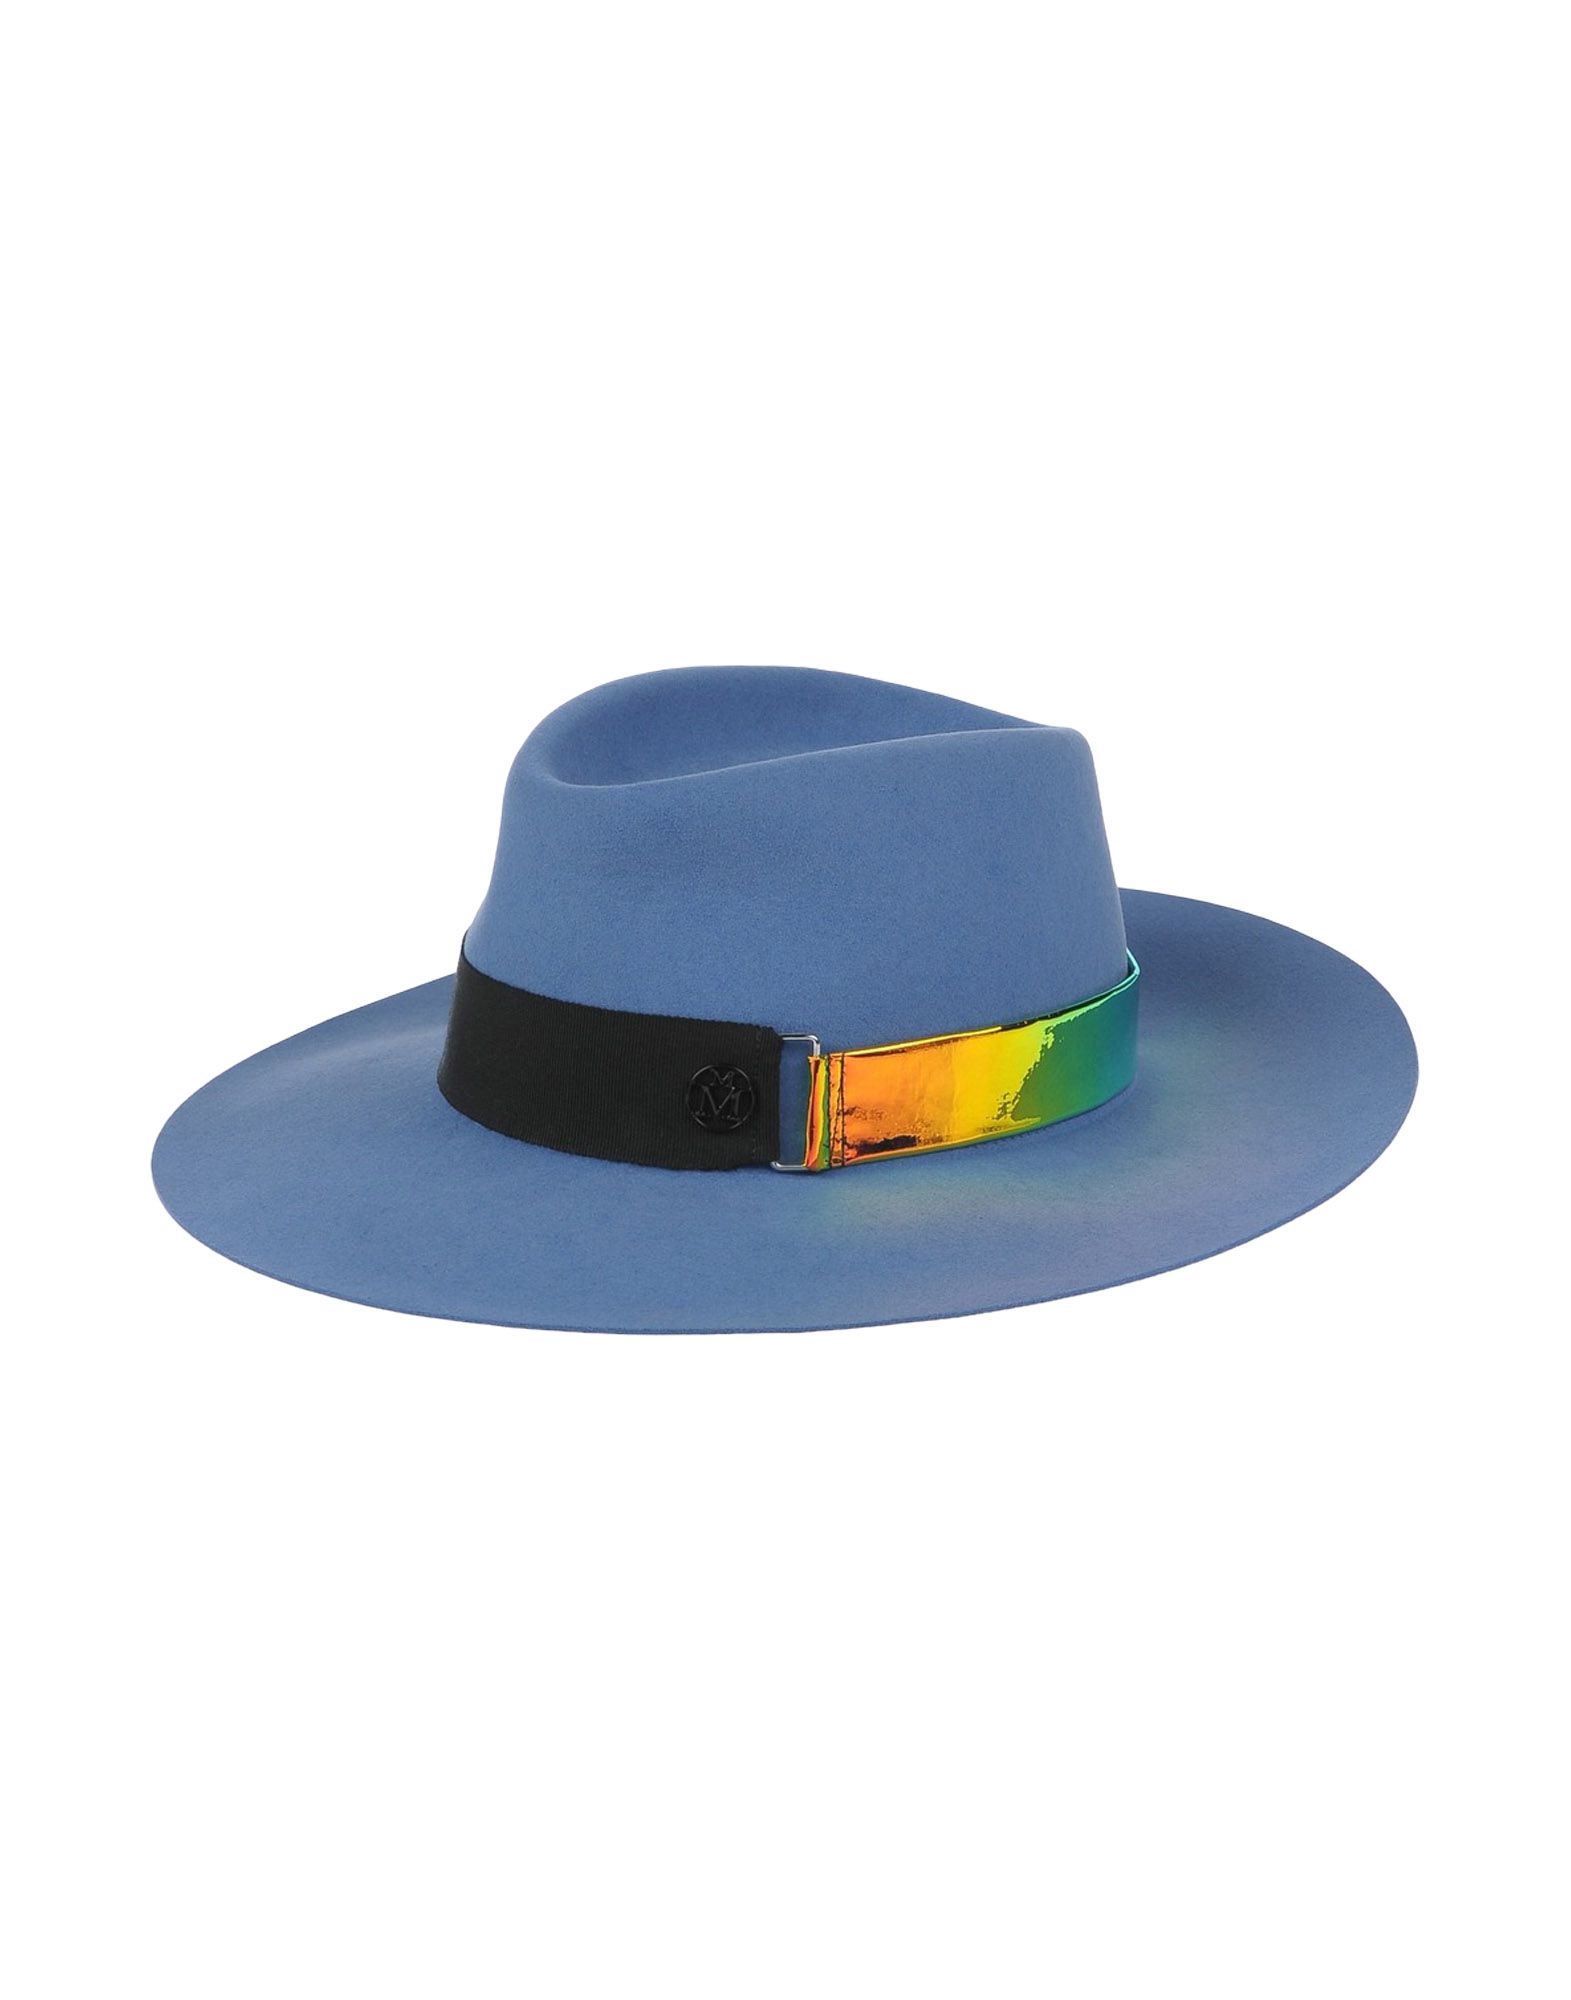 MAISON MICHEL Hats - Item 46529206